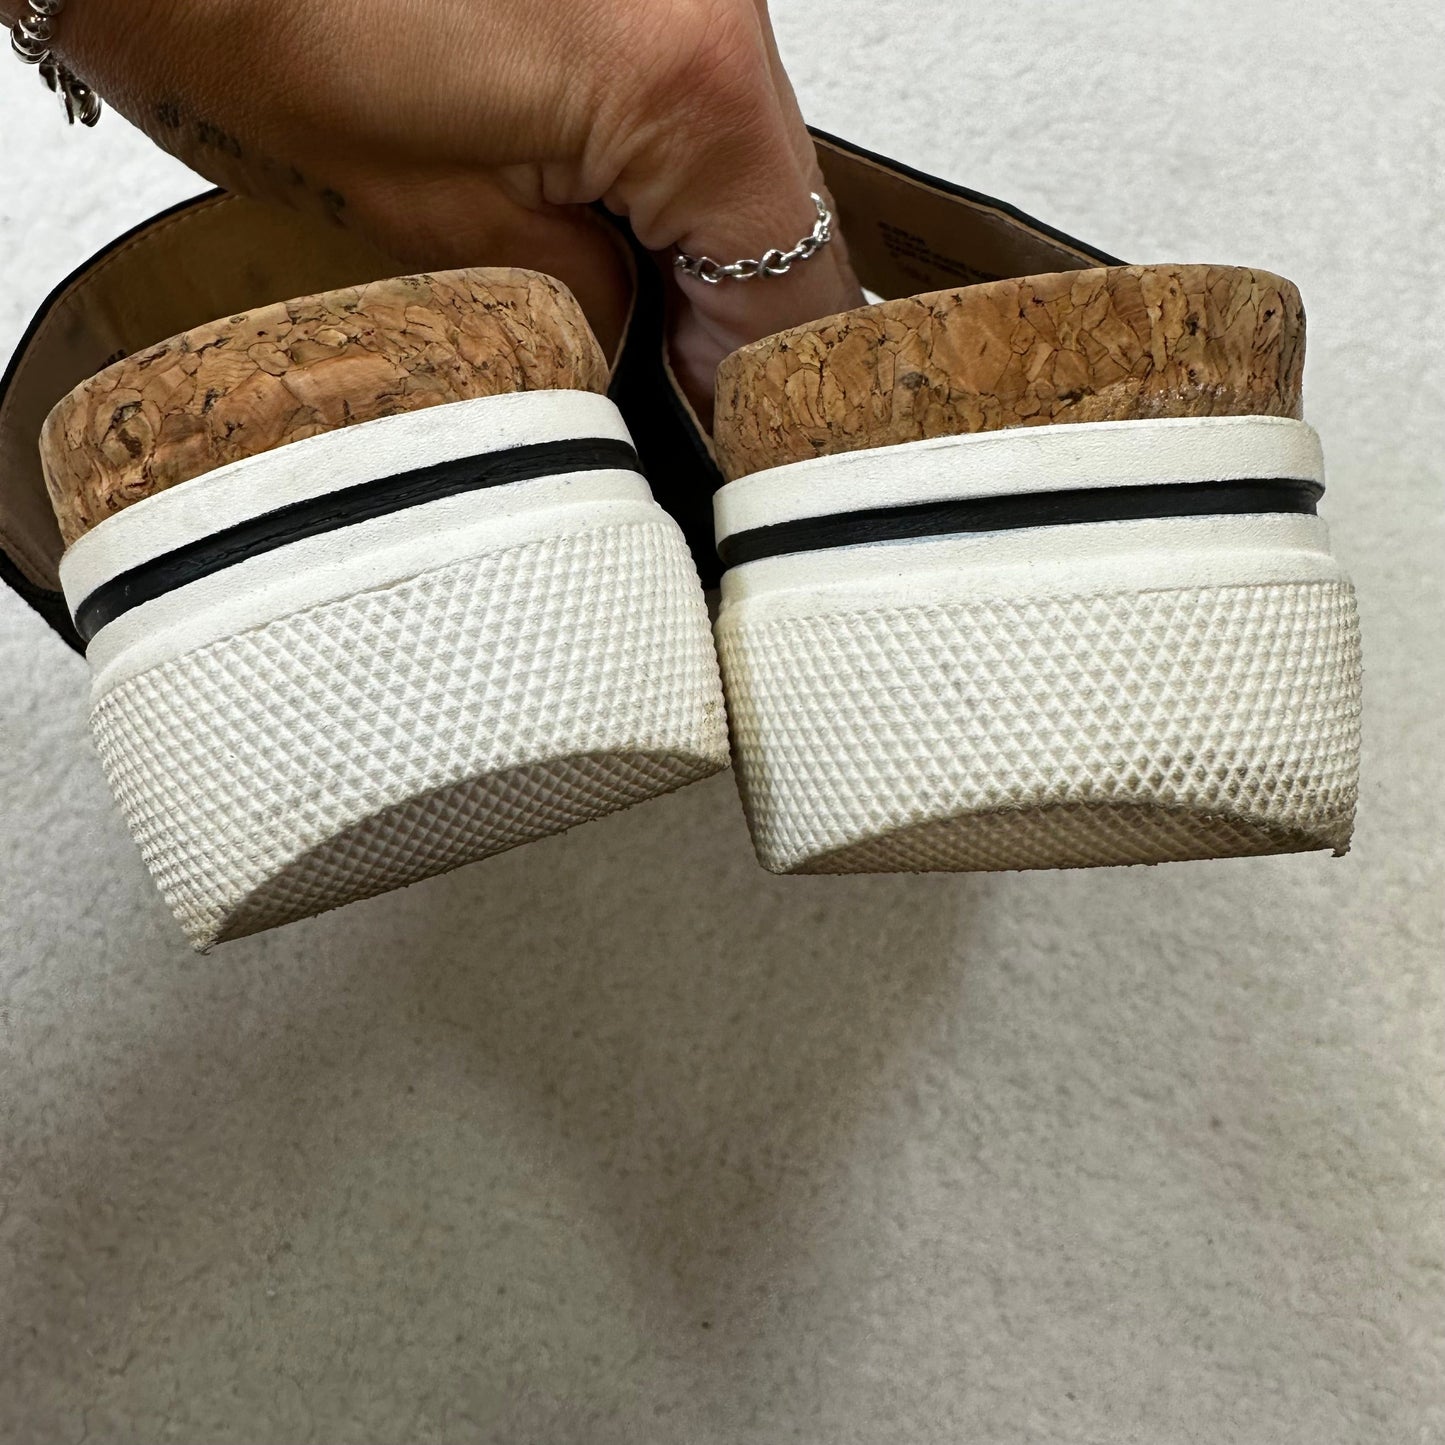 Black Sandals Flats Adrienne Vittadini, Size 10